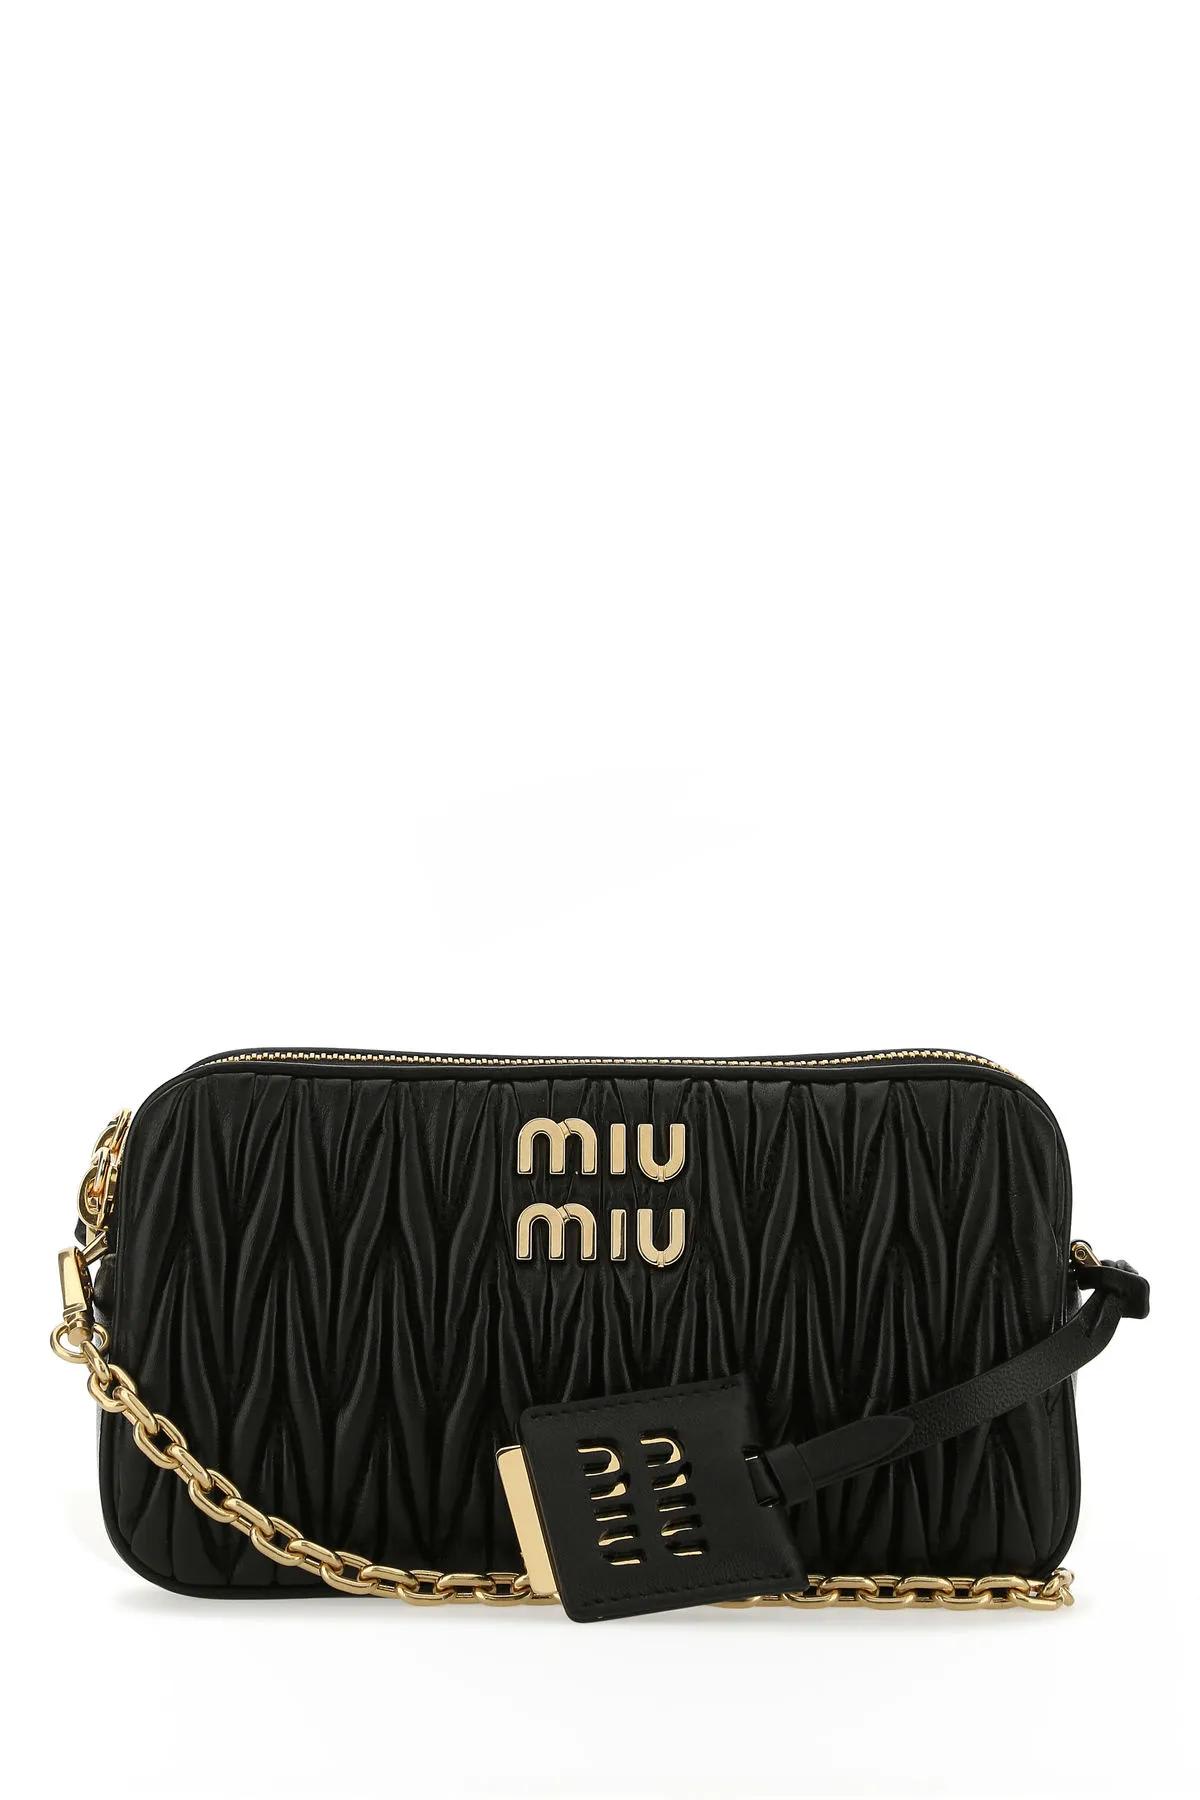 Cross body bags Miu Miu - Logo detailed matelassé leather bag - 5BD140N88MYE